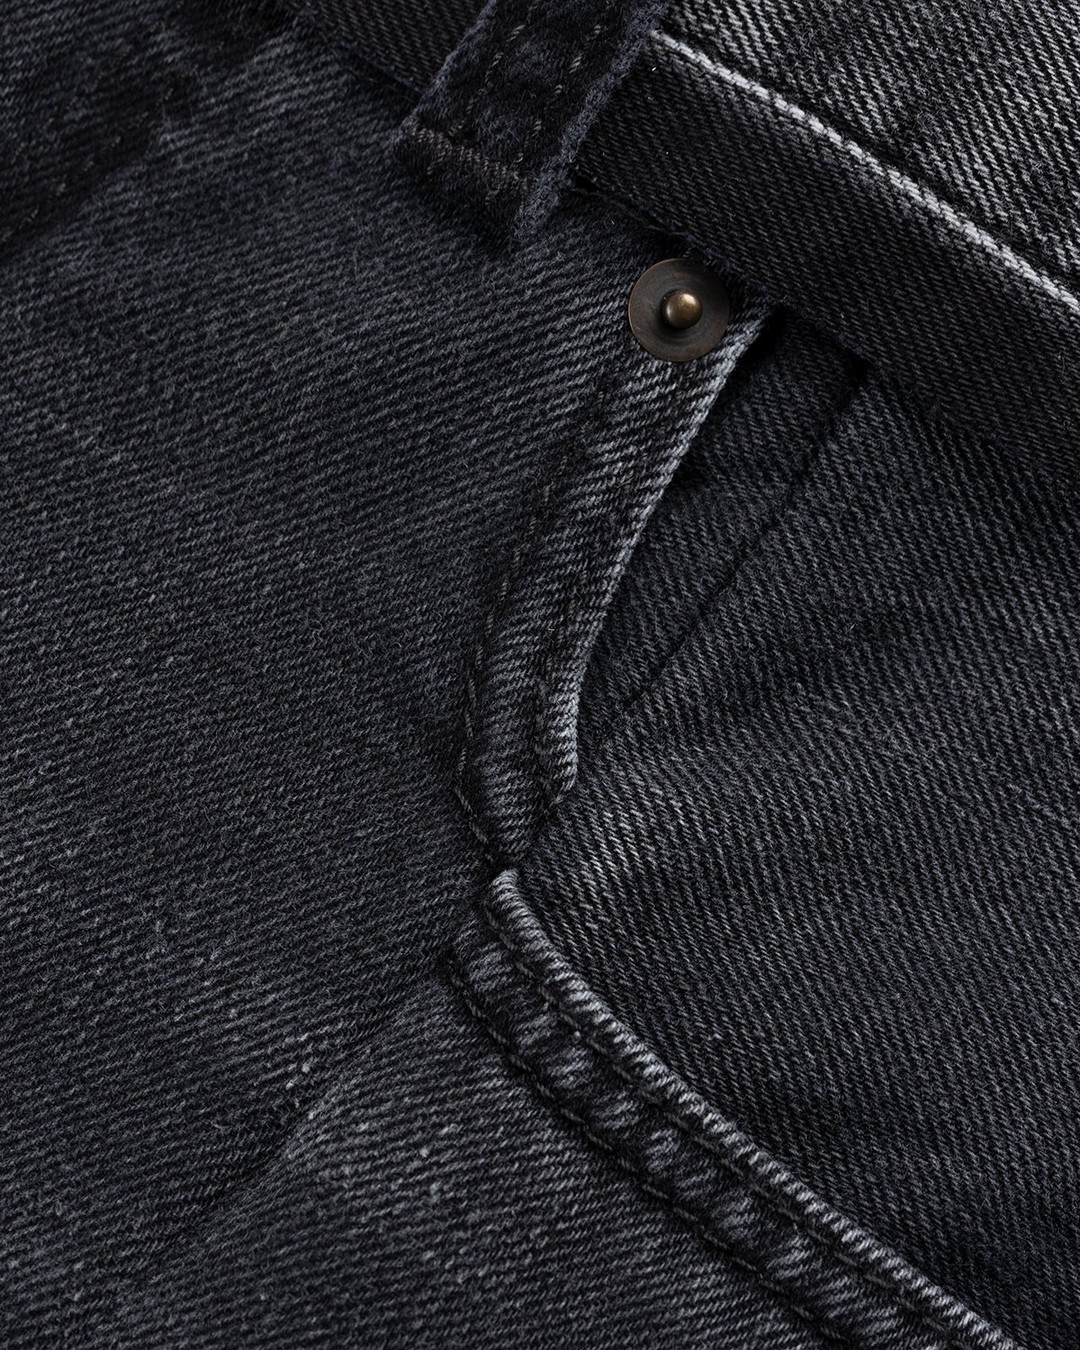 Maison Margiela – Spliced Jeans Black - Pants - Black - Image 6